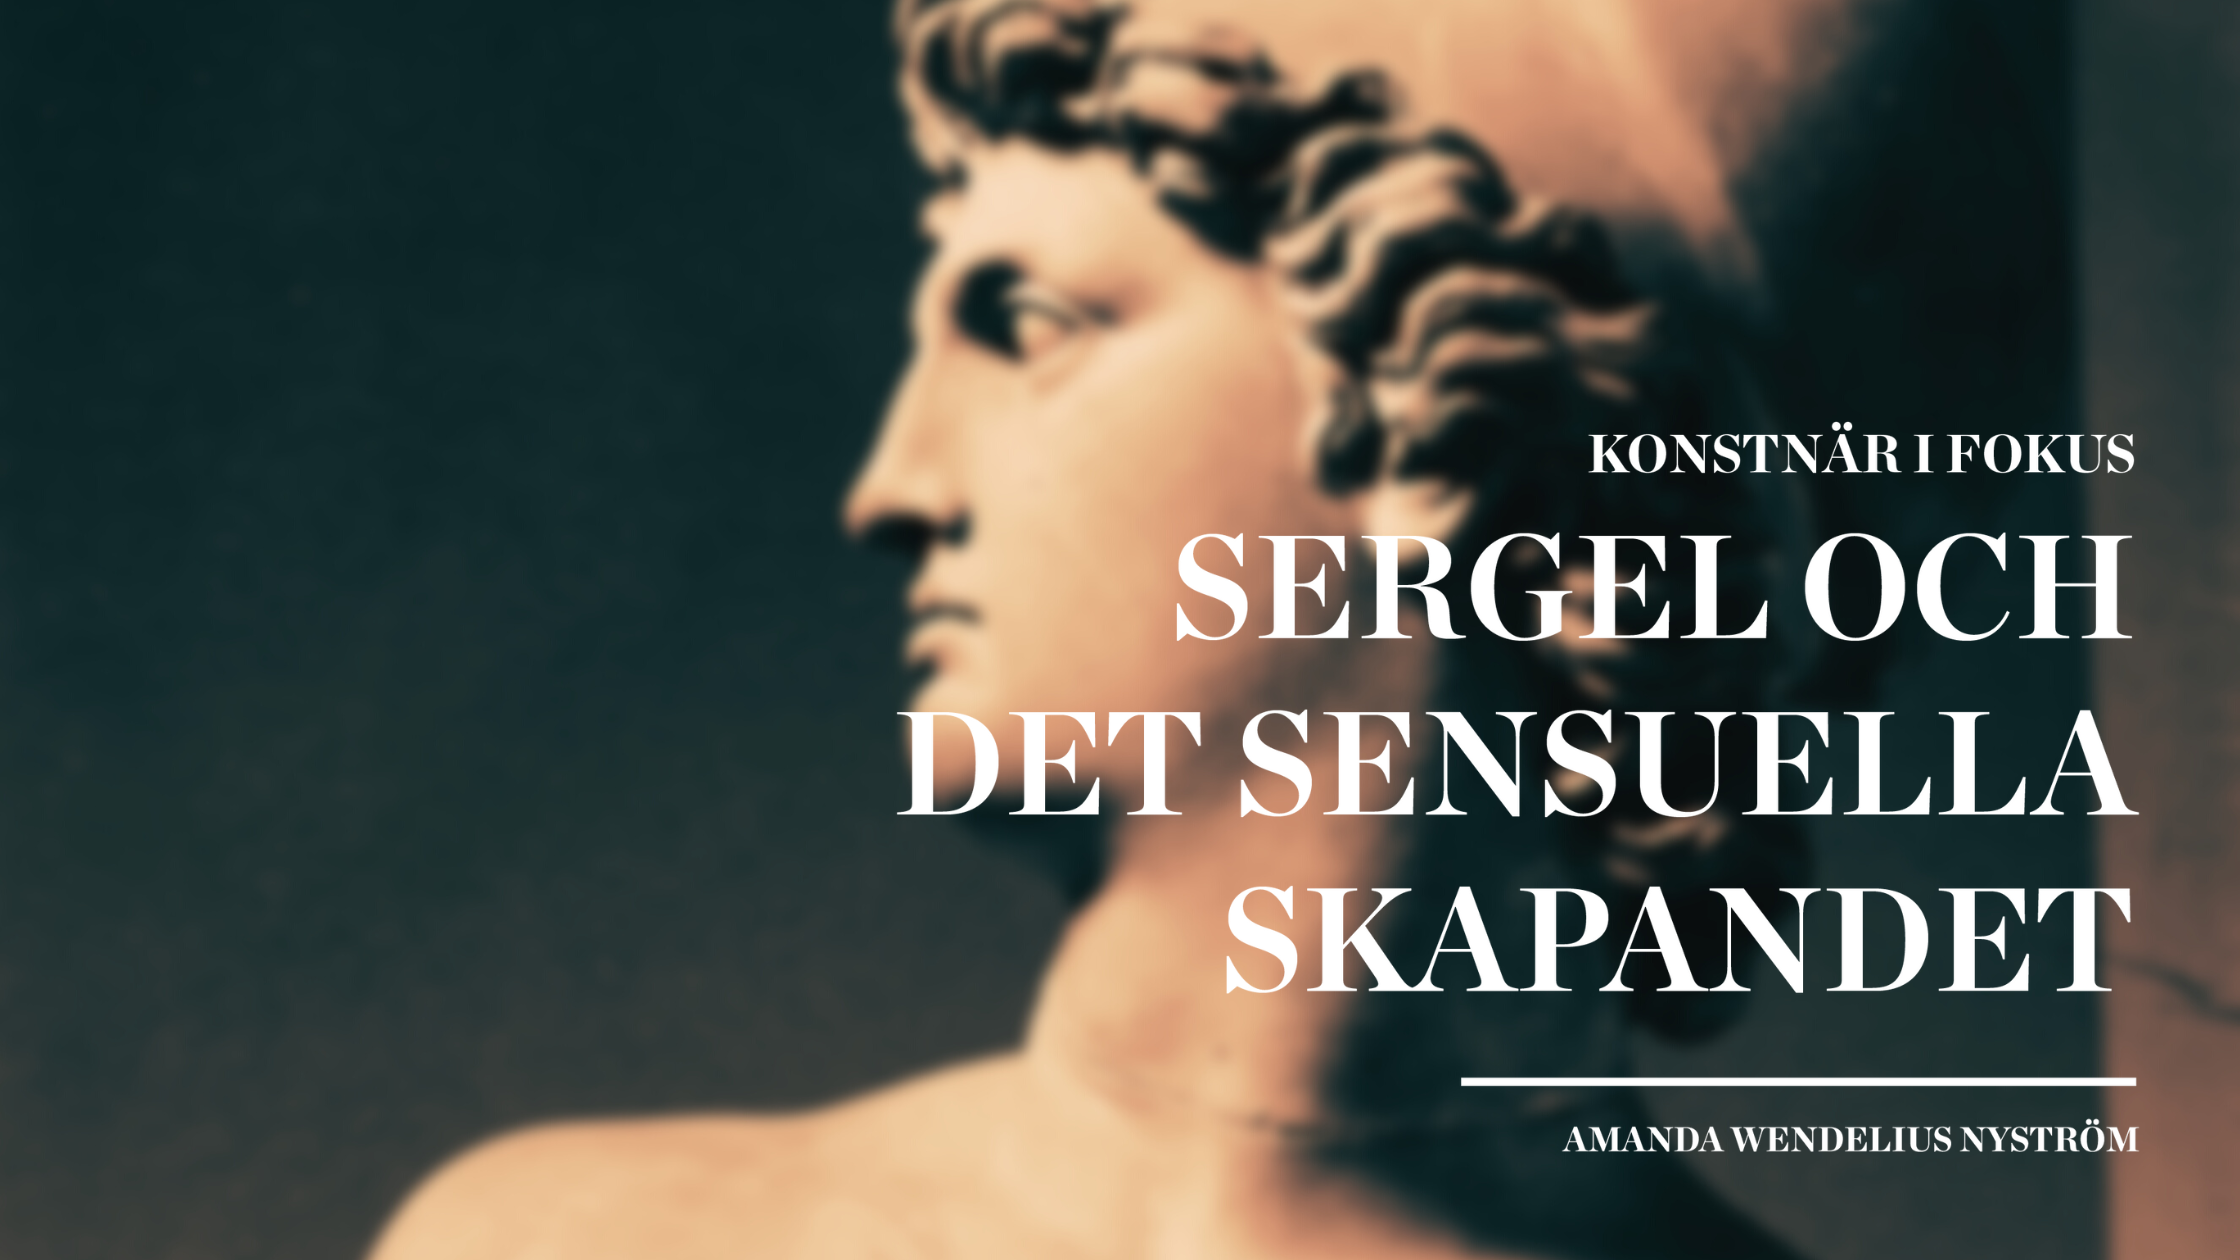 Sergel och det sensuella skapandet av Amanda Wendelius Nyström, Nationalmuseum